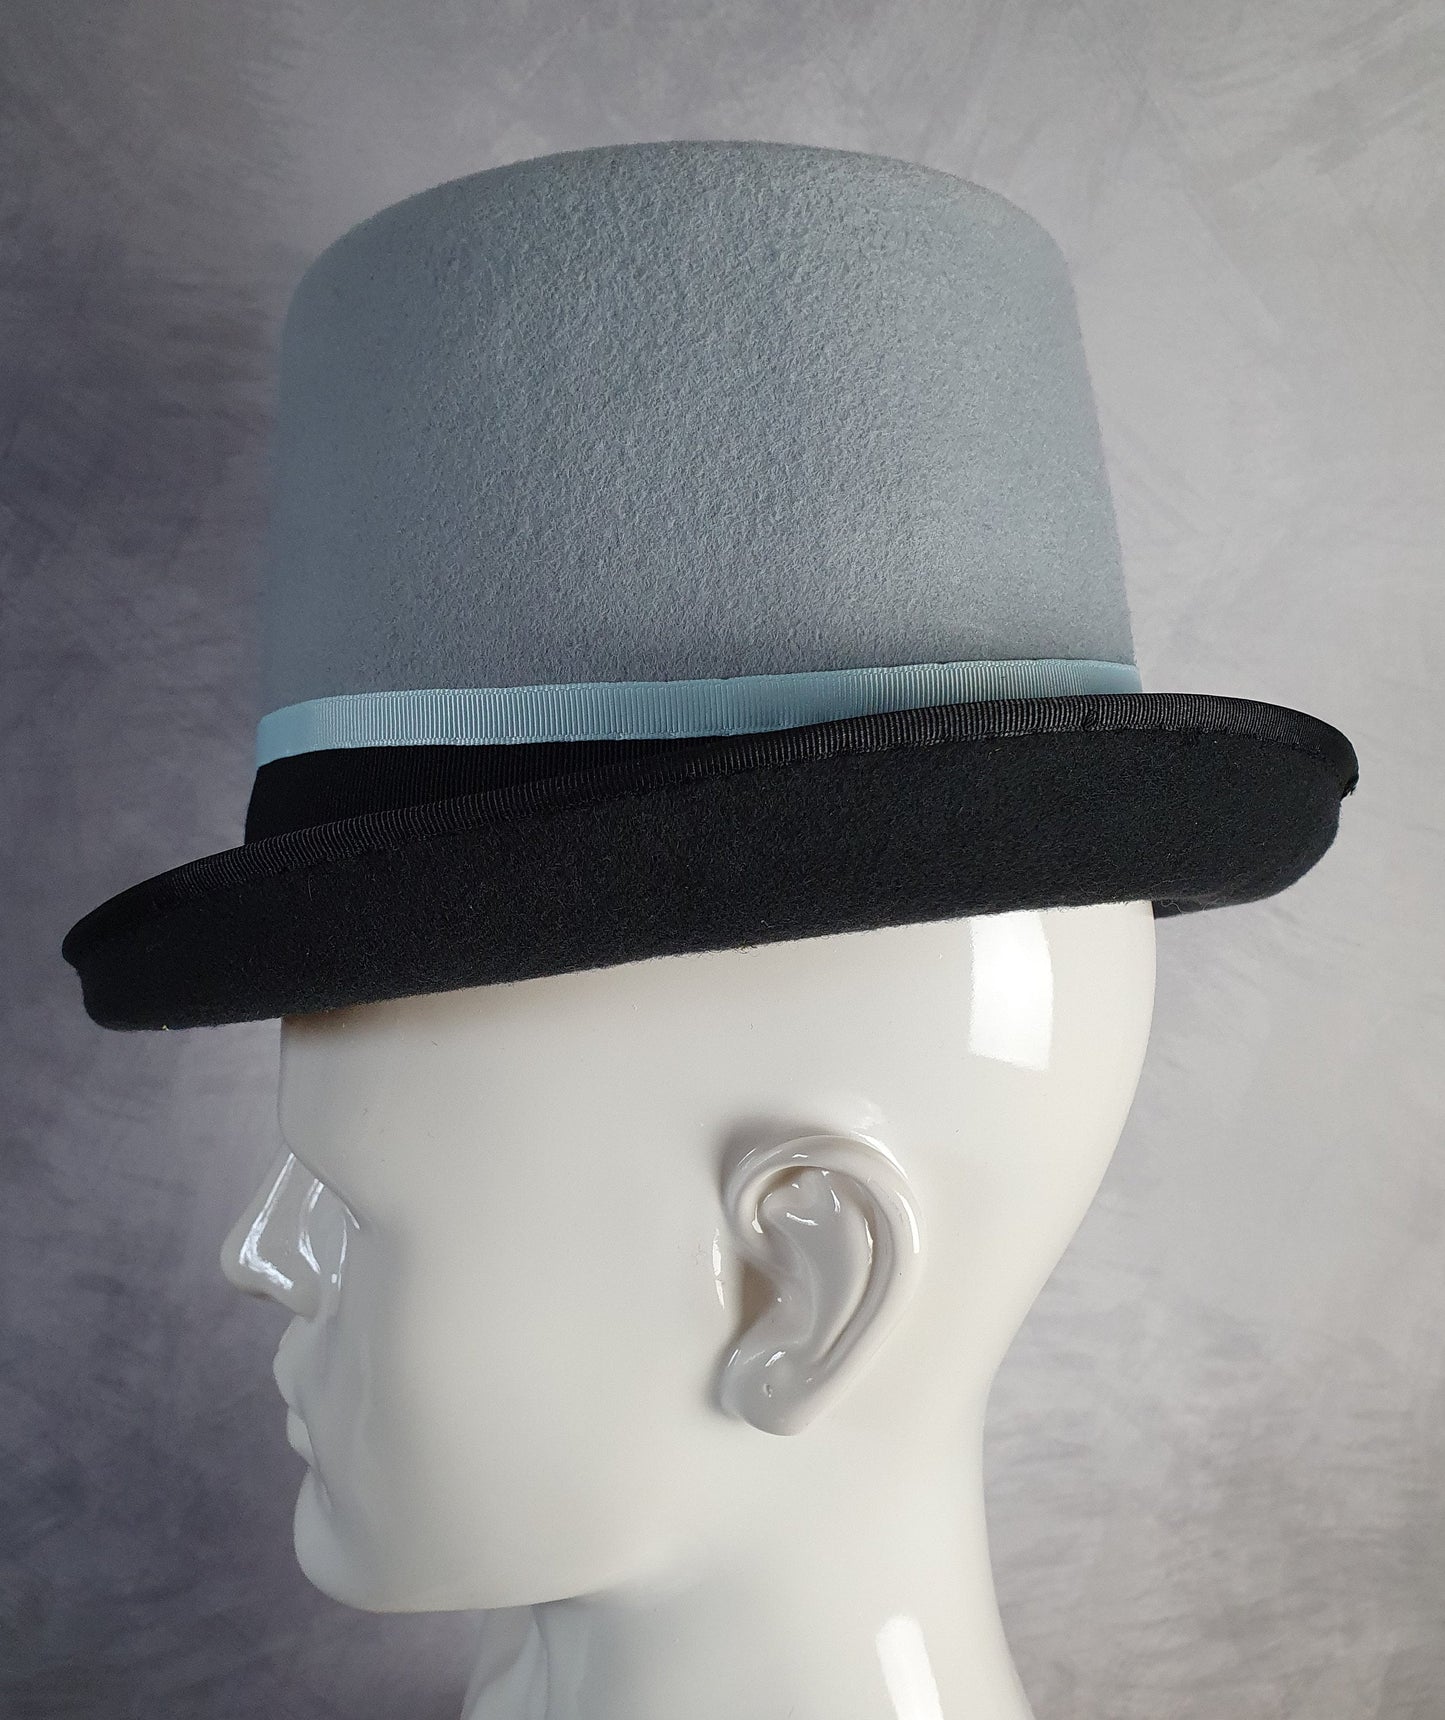 Handgemaakte vilthoed met fazantenveren, blauw met donkergrijze hoge hoed, unisex hoed, Victoriaanse hoed-perfect voor speciale gelegenheden